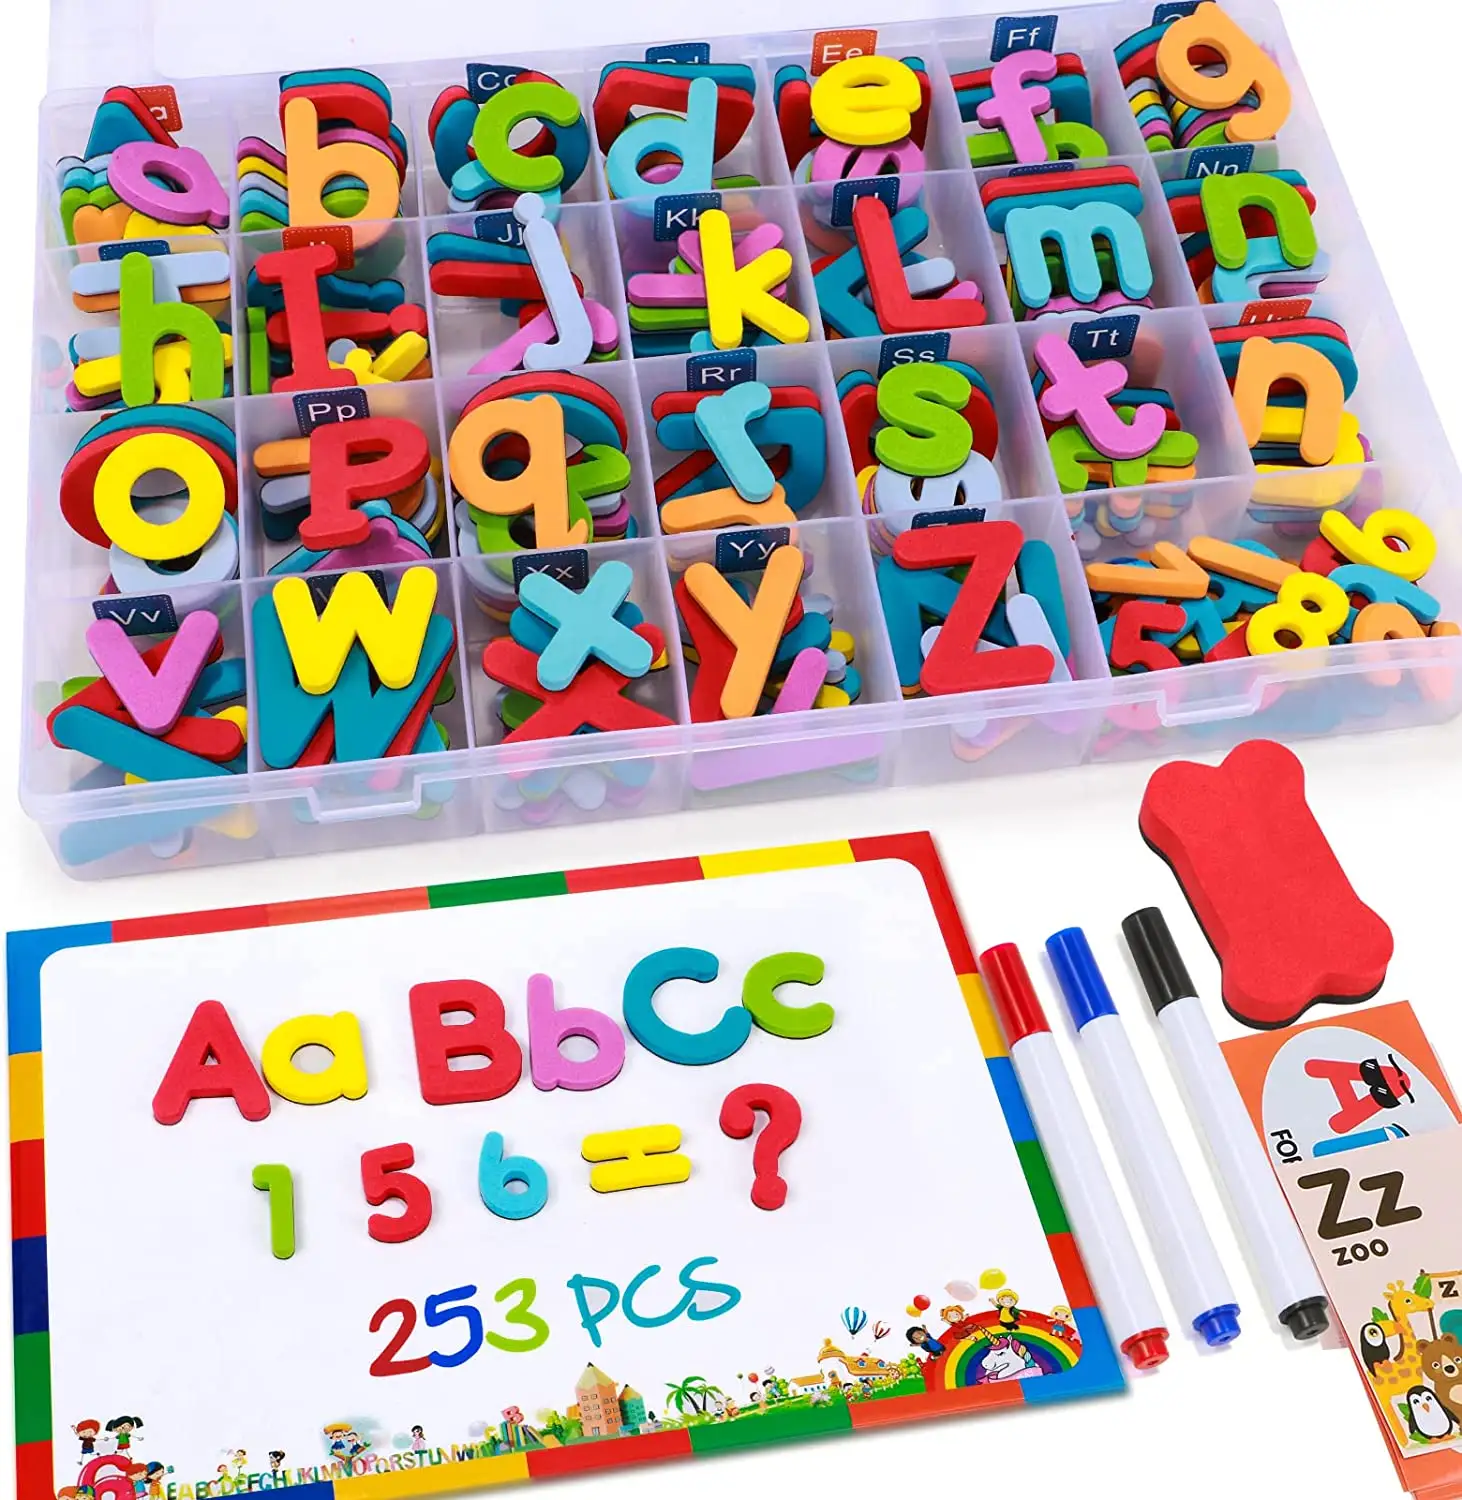 แม่เหล็กตัวอักษรและตัวเลขชุดโฟมตัวอักษร ABC ตู้เย็นแม่เหล็กเด็กของเล่นเพื่อการศึกษา